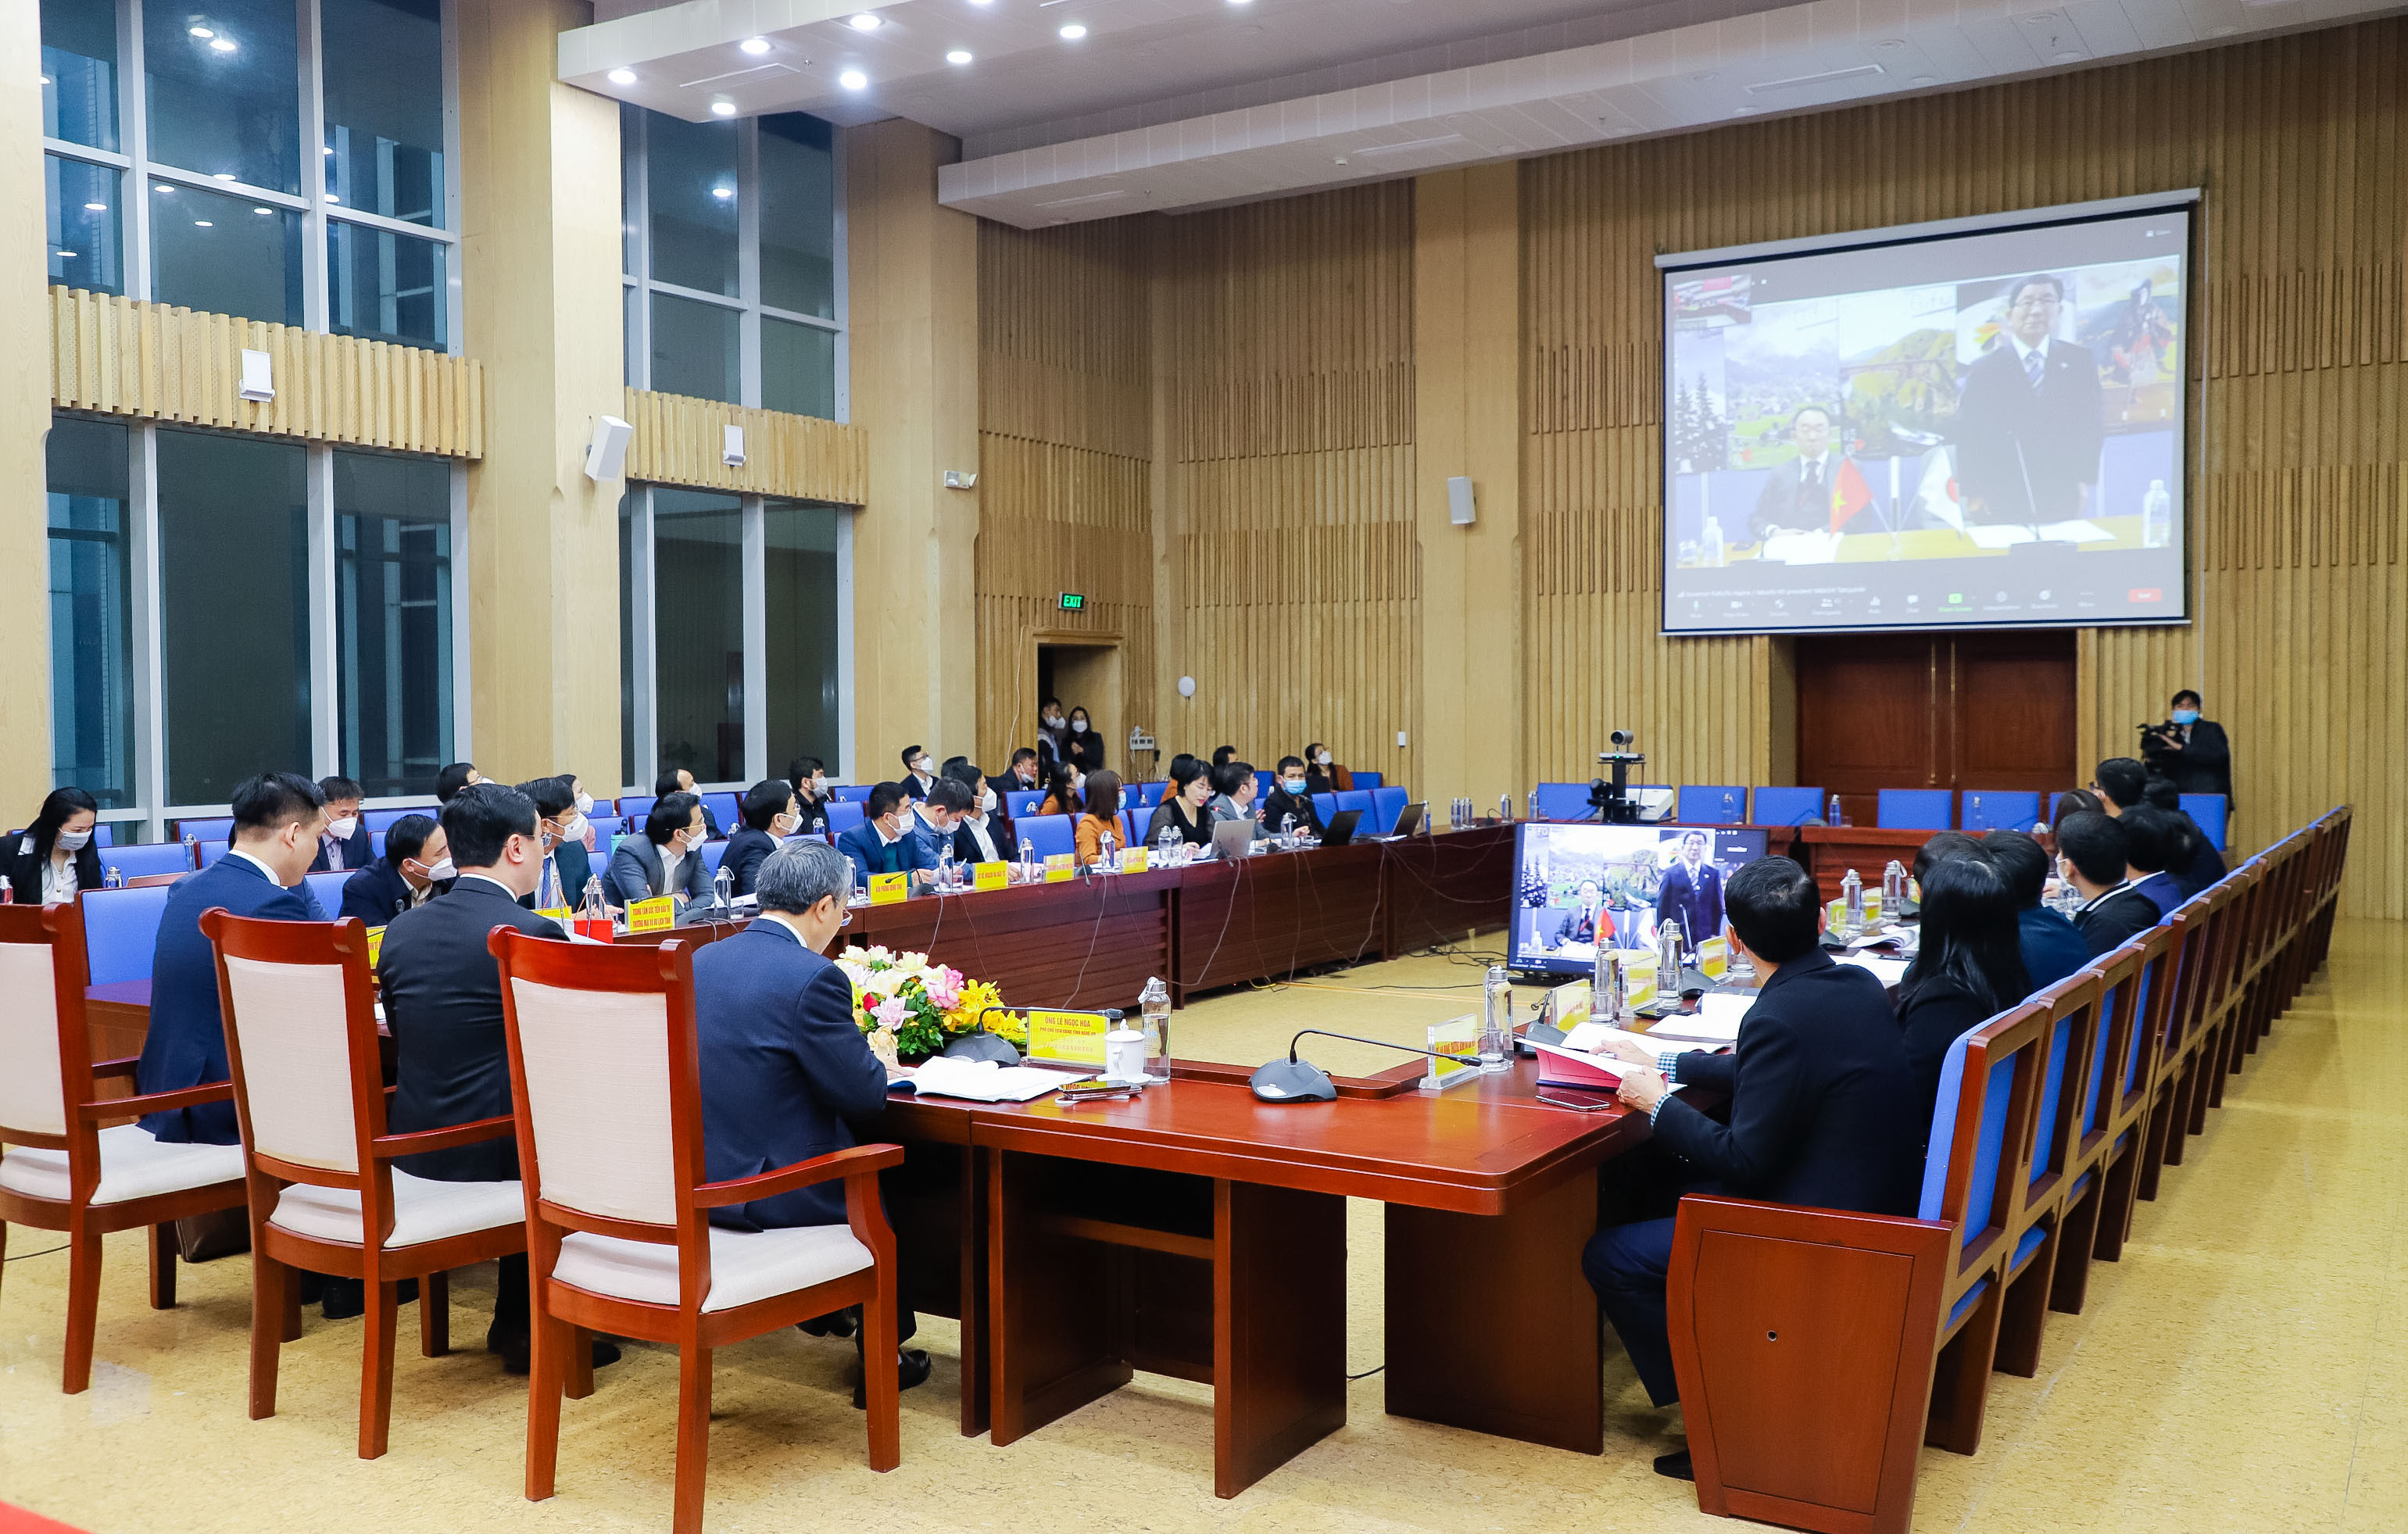 Hội nghị trực tuyến với các điểm cầu tại tỉnh Nghệ An, tỉnh Gifu và các bộ, ngành, tổ chức quốc tế là sáng kiến kết nối trong bối cảnh đại dịch Covid-19 khiến việc gặp gỡ trực tiếp trở nên khó khăn. Ảnh: P.B